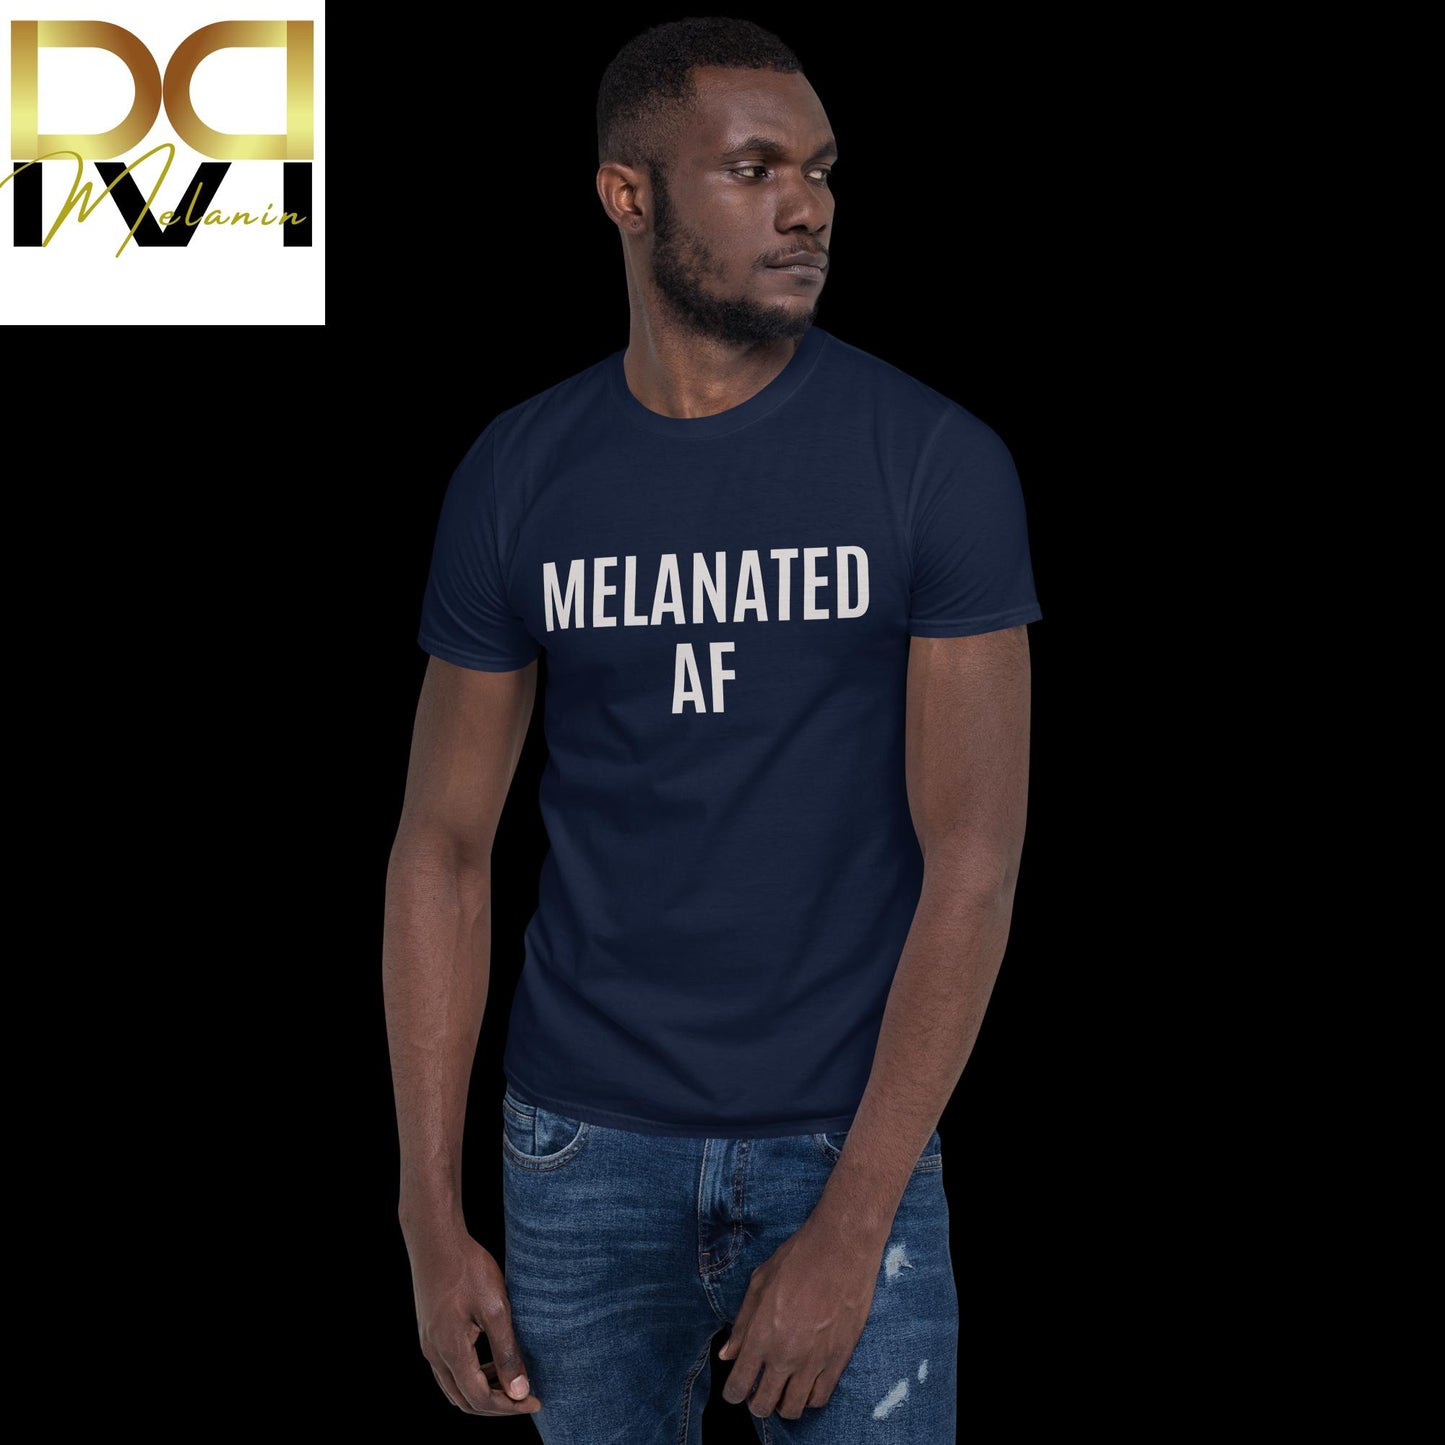 "Melanated AF" T-Shirt - Boldly Celebrate Your Melanin